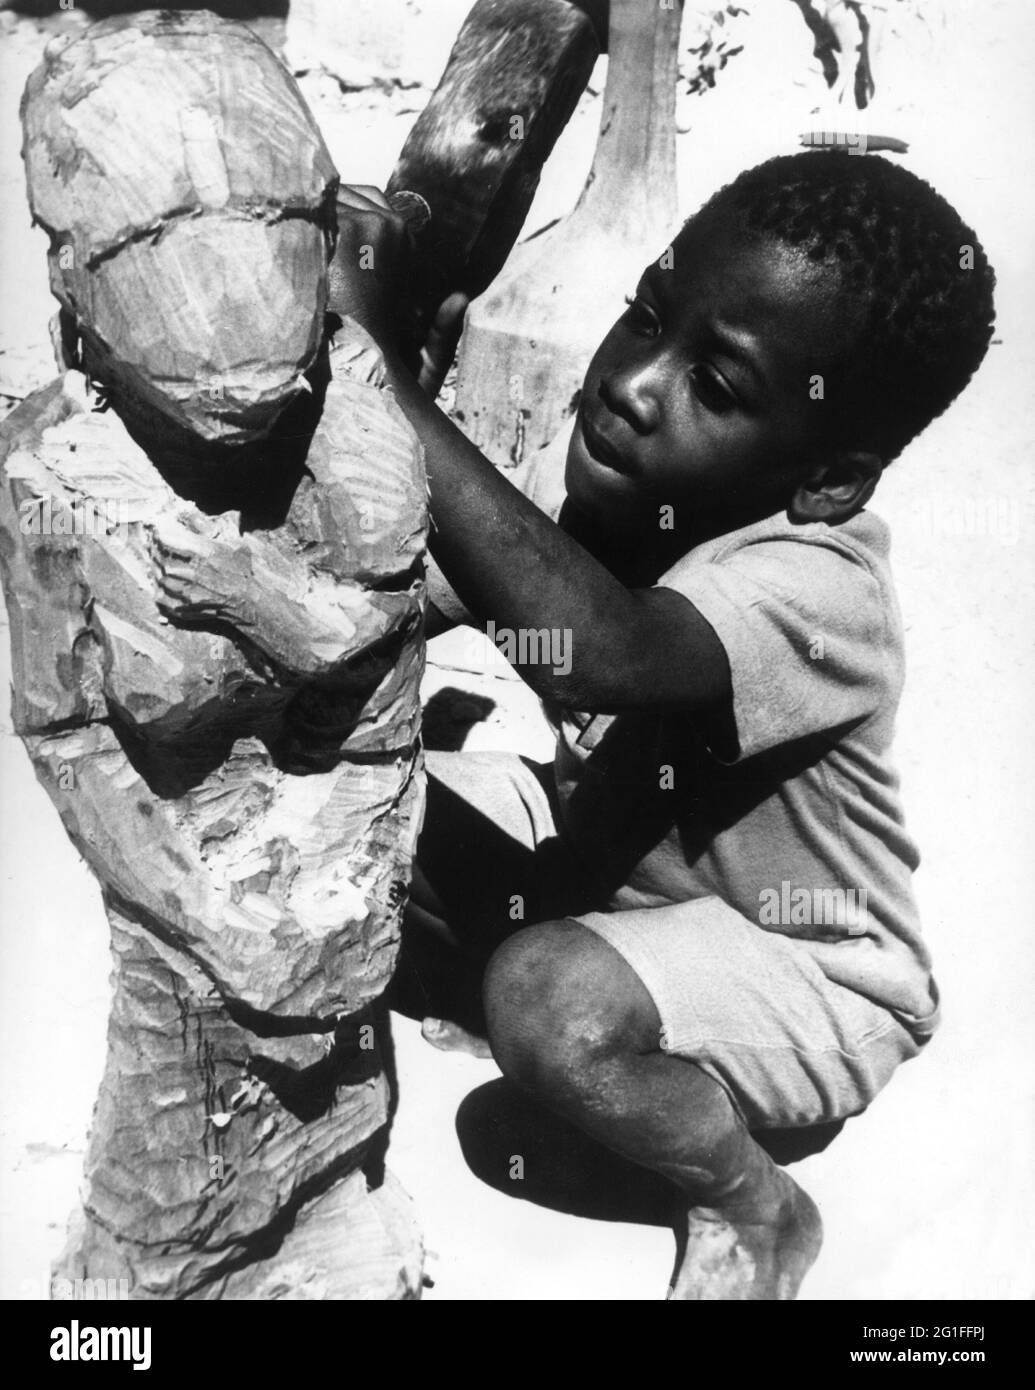 Géographie / Voyage, Haïti, peuple, garçon est en train de sculpter une figure, années 1960, DROITS-SUPPLÉMENTAIRES-AUTORISATION-INFO-NON-DISPONIBLE Banque D'Images